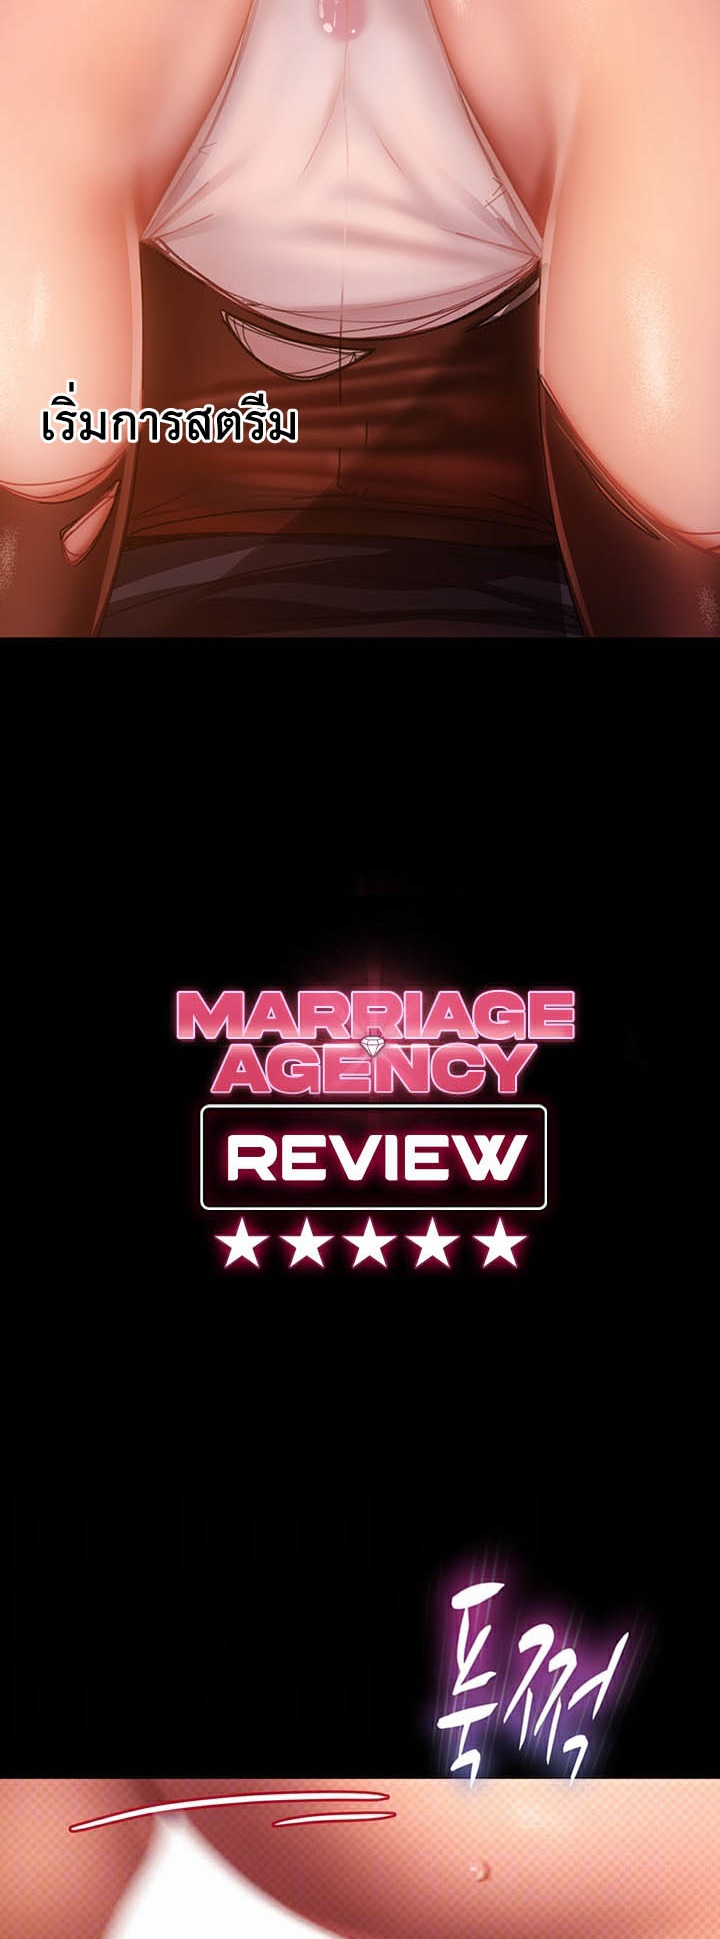 อ่านโดจิน เรื่อง Marriage Agency Review 40 04